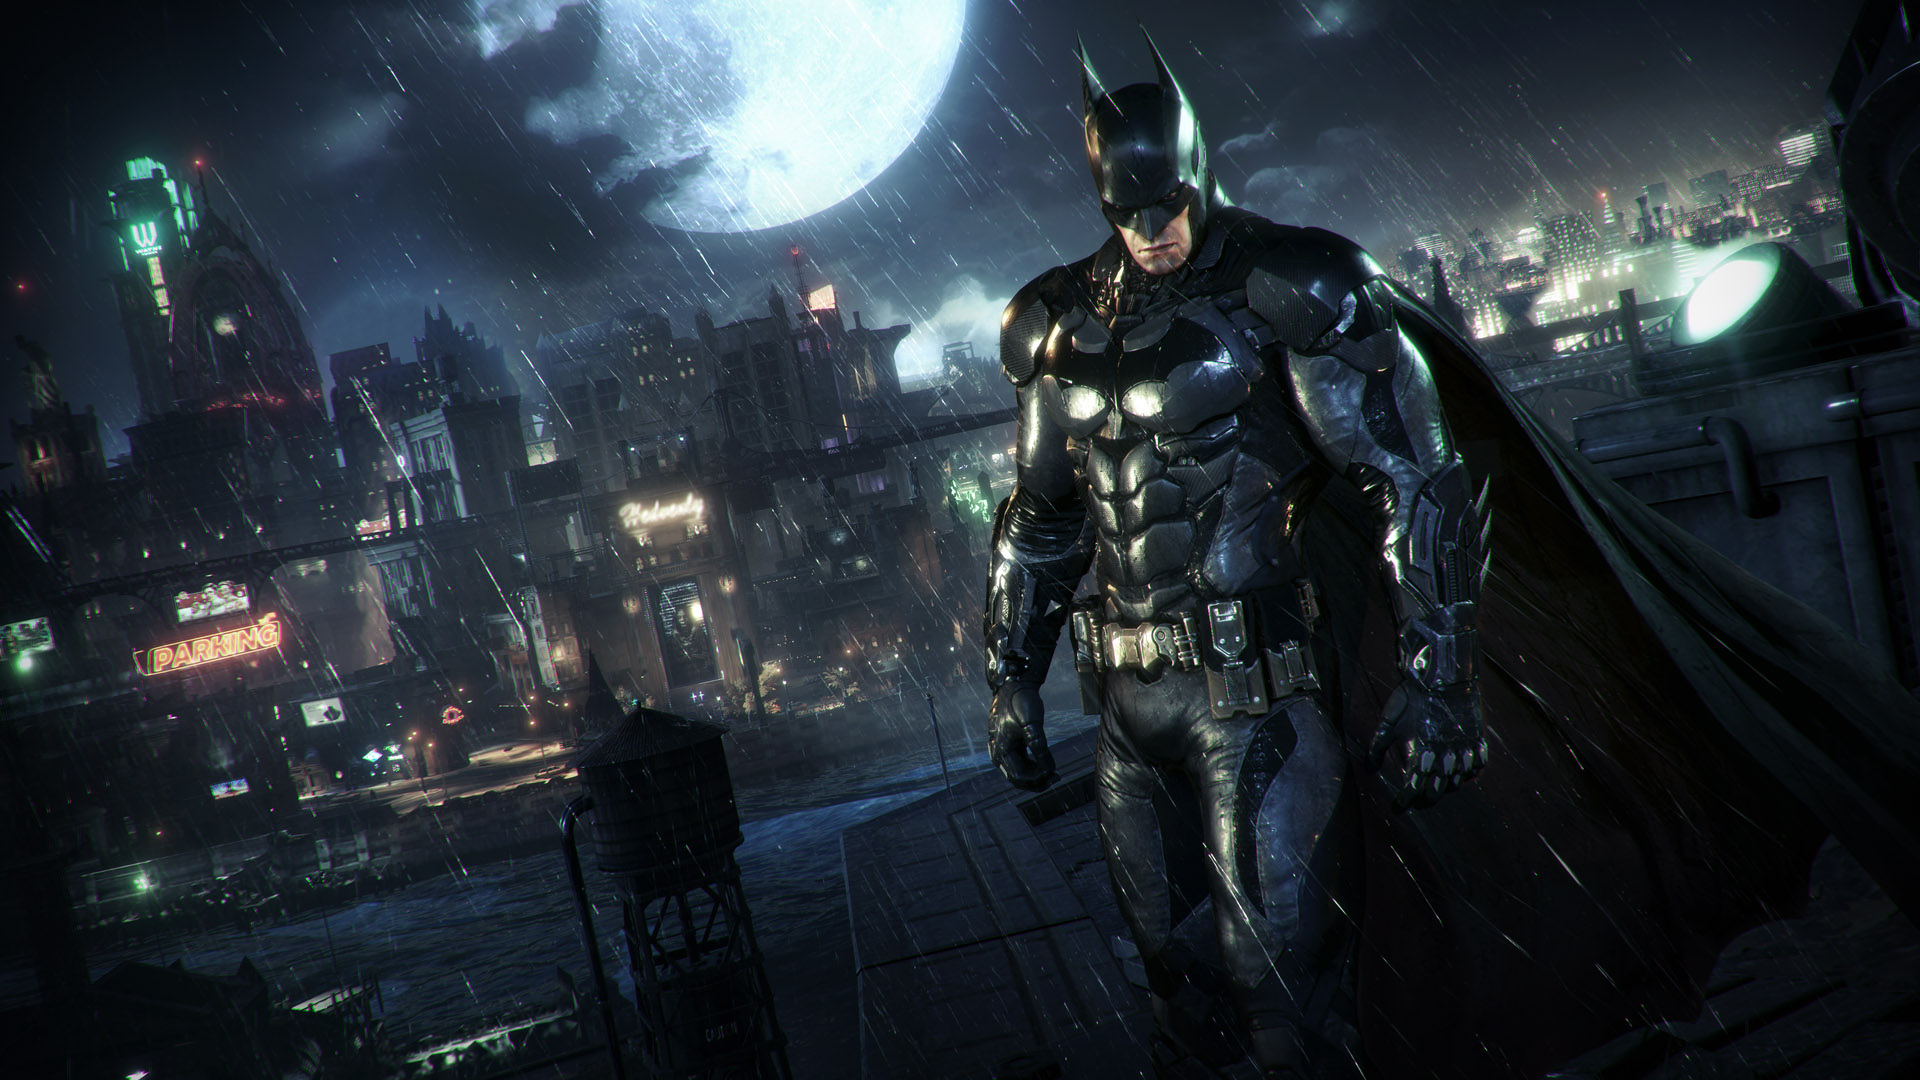  Batman HQ Background Images